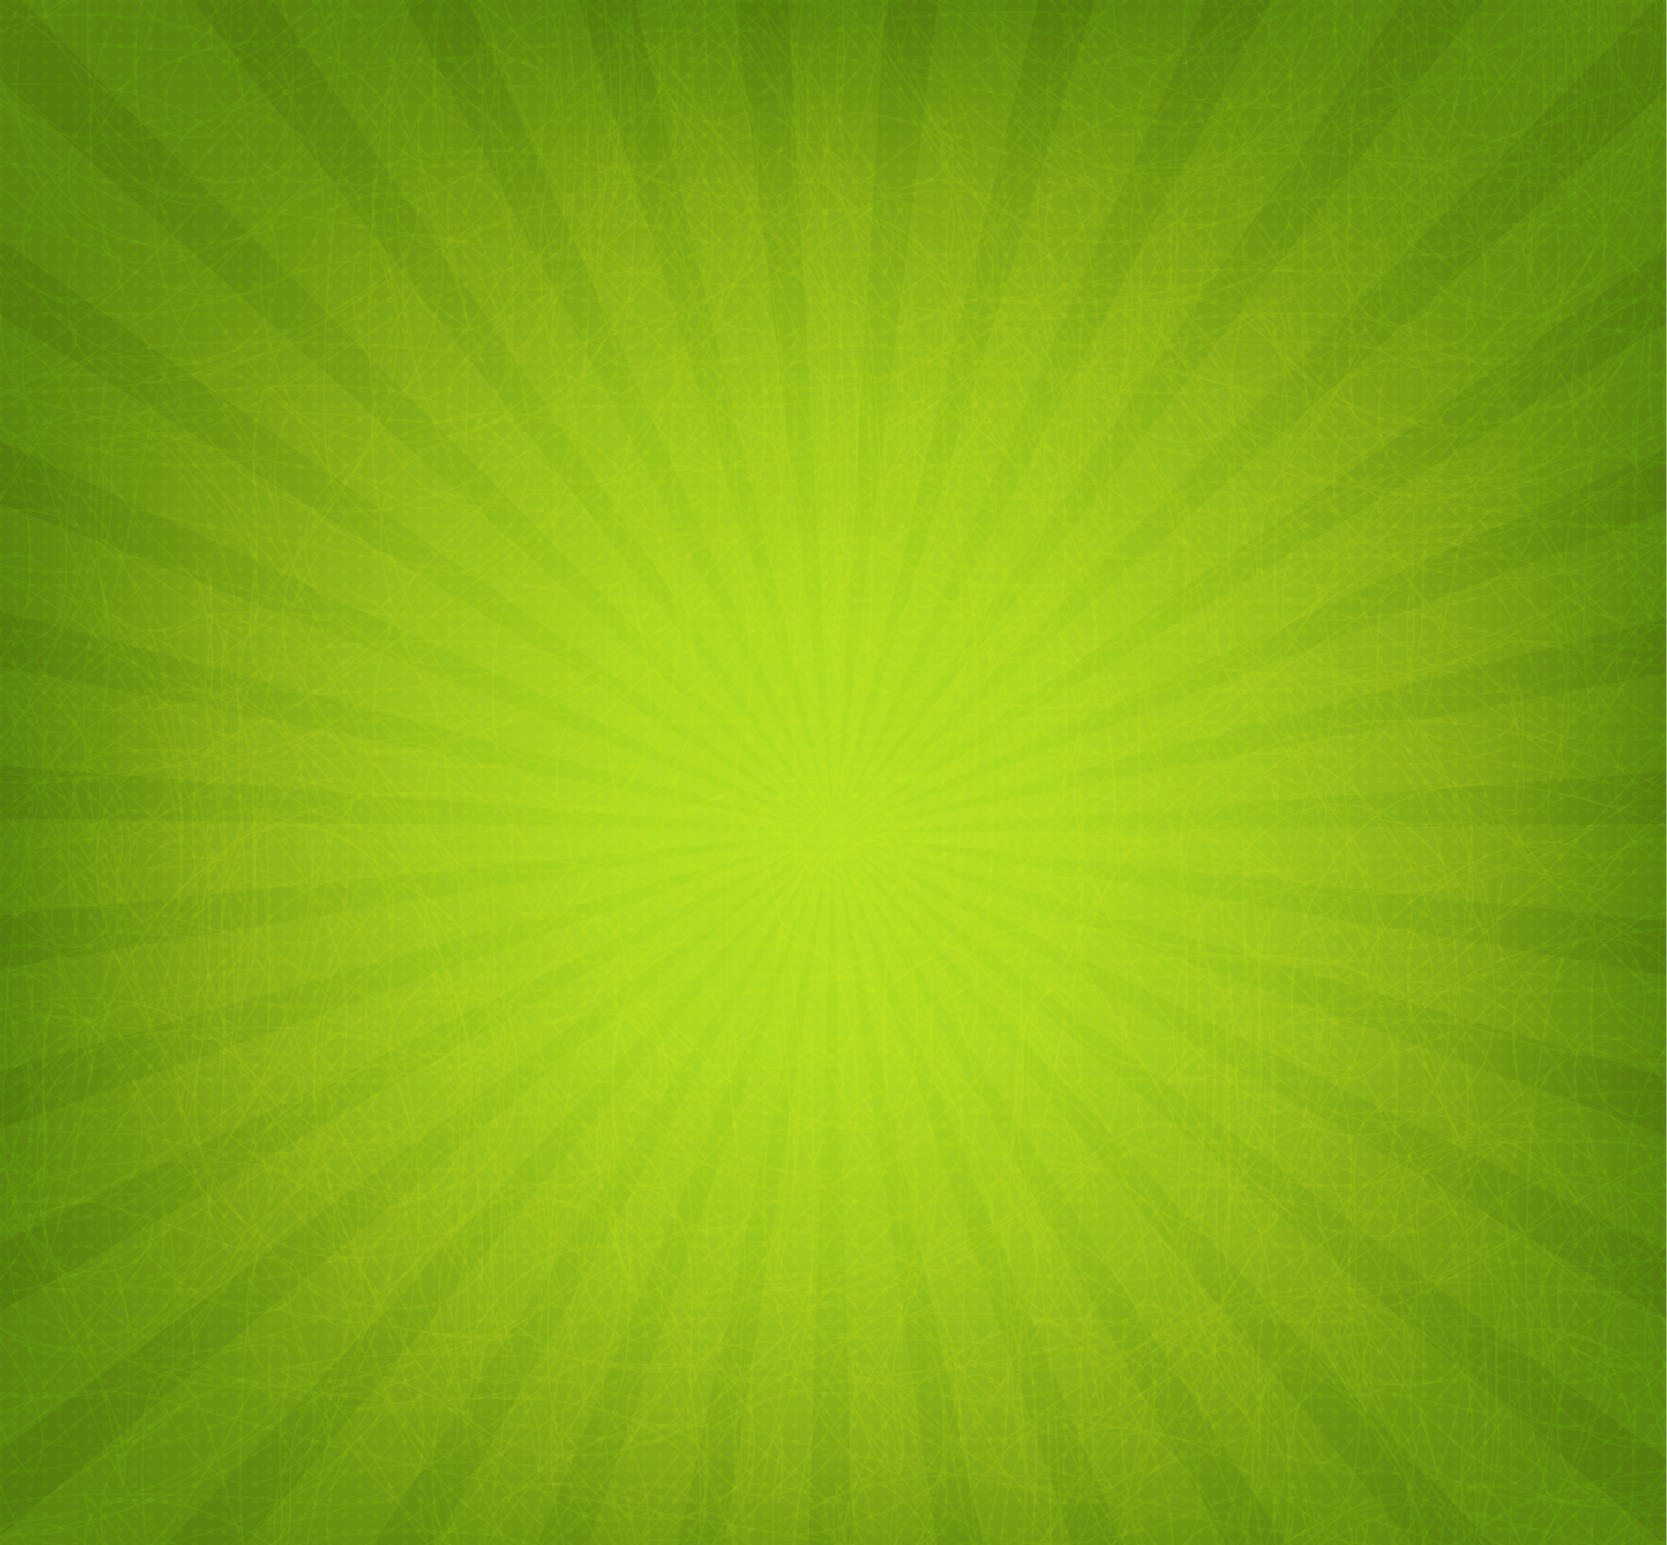 Green Starburst Background